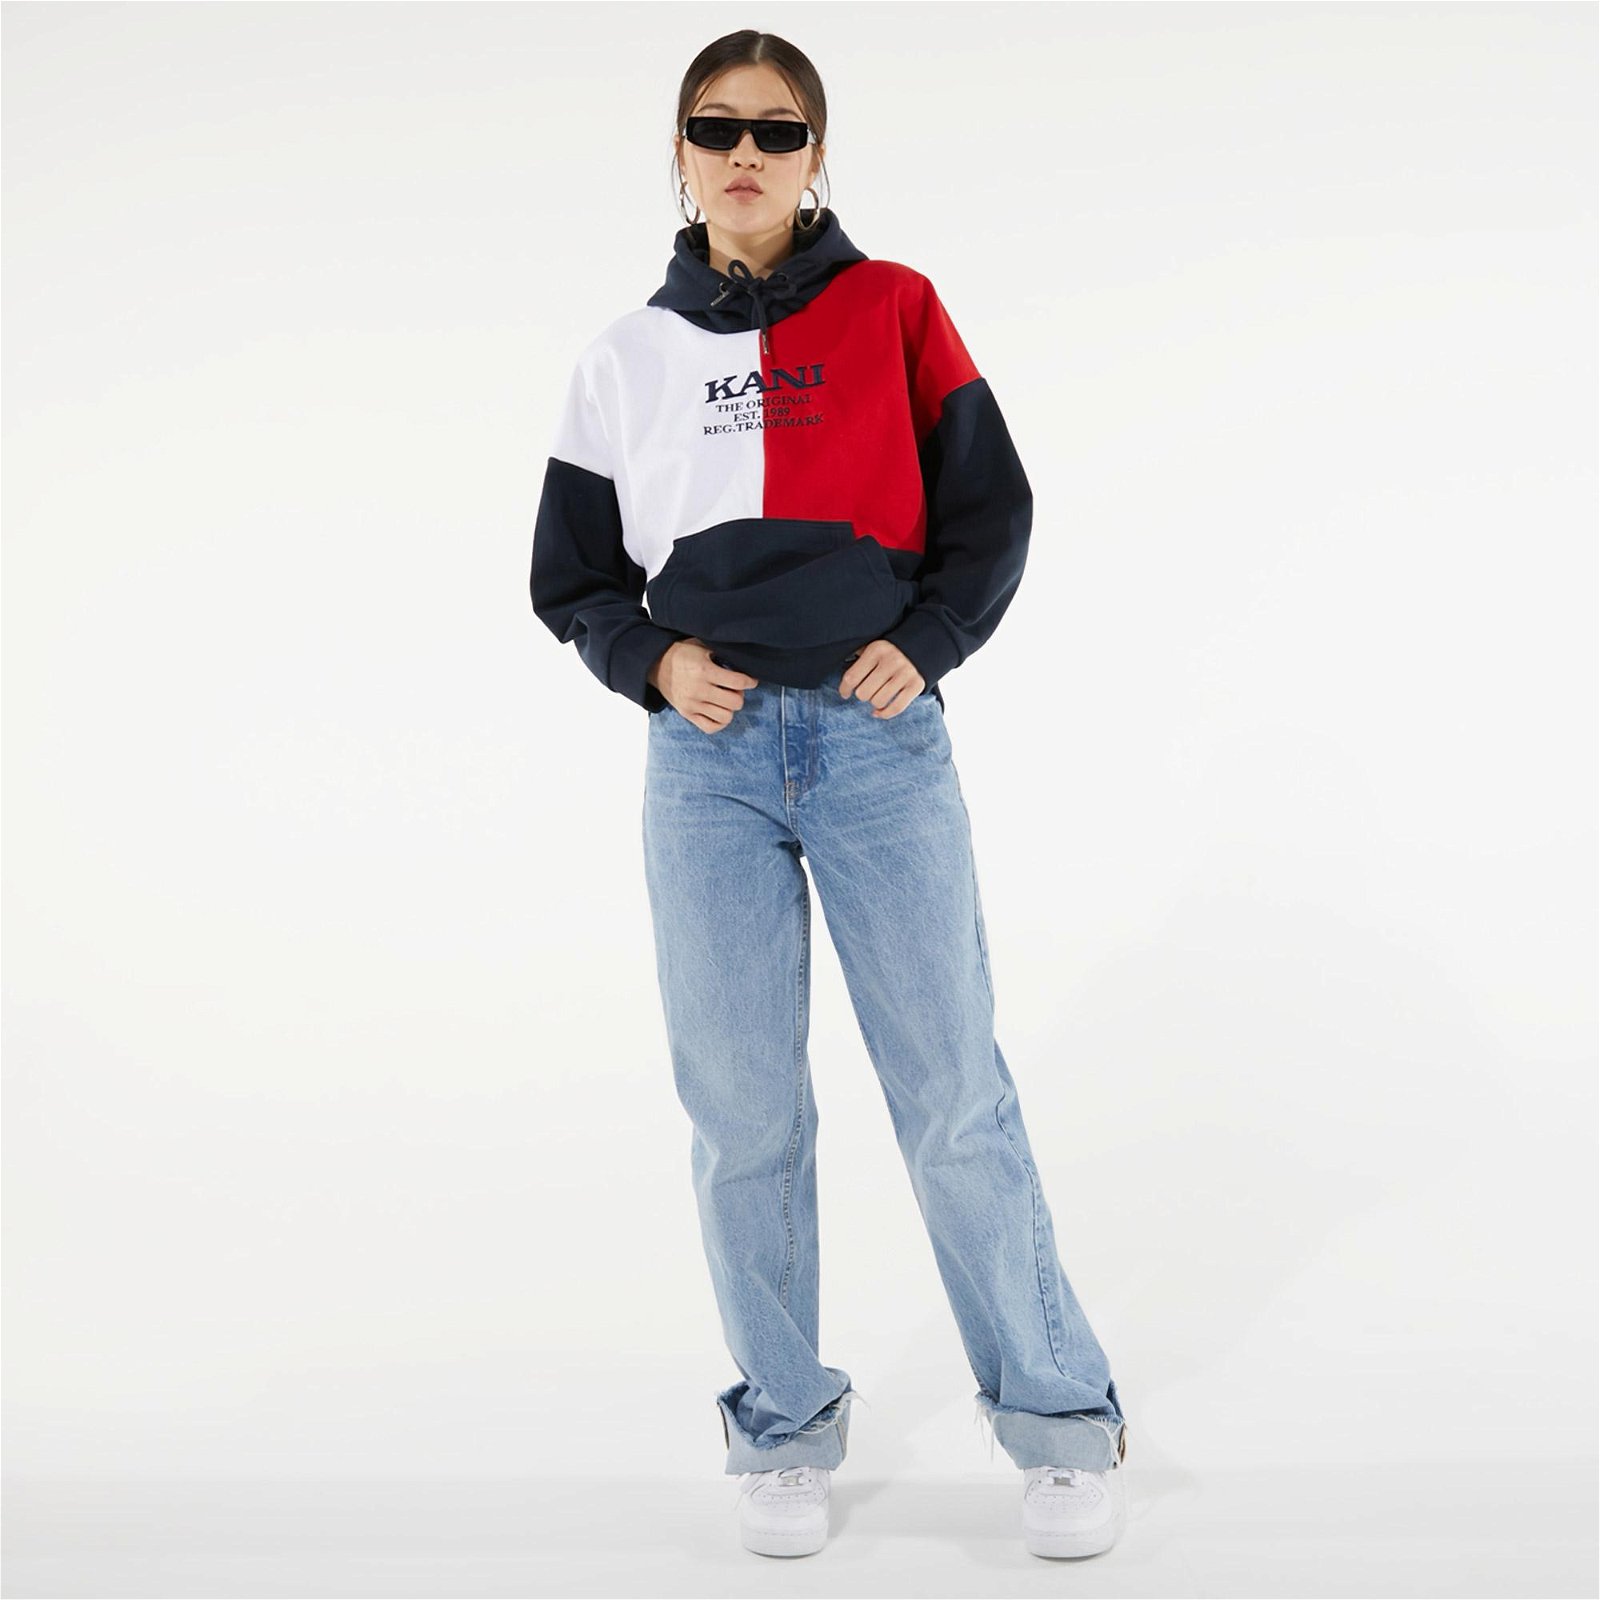 Karl Kani Retro Blok Kadın Lacivert-Kırmızı-Beyaz Sweatshirt